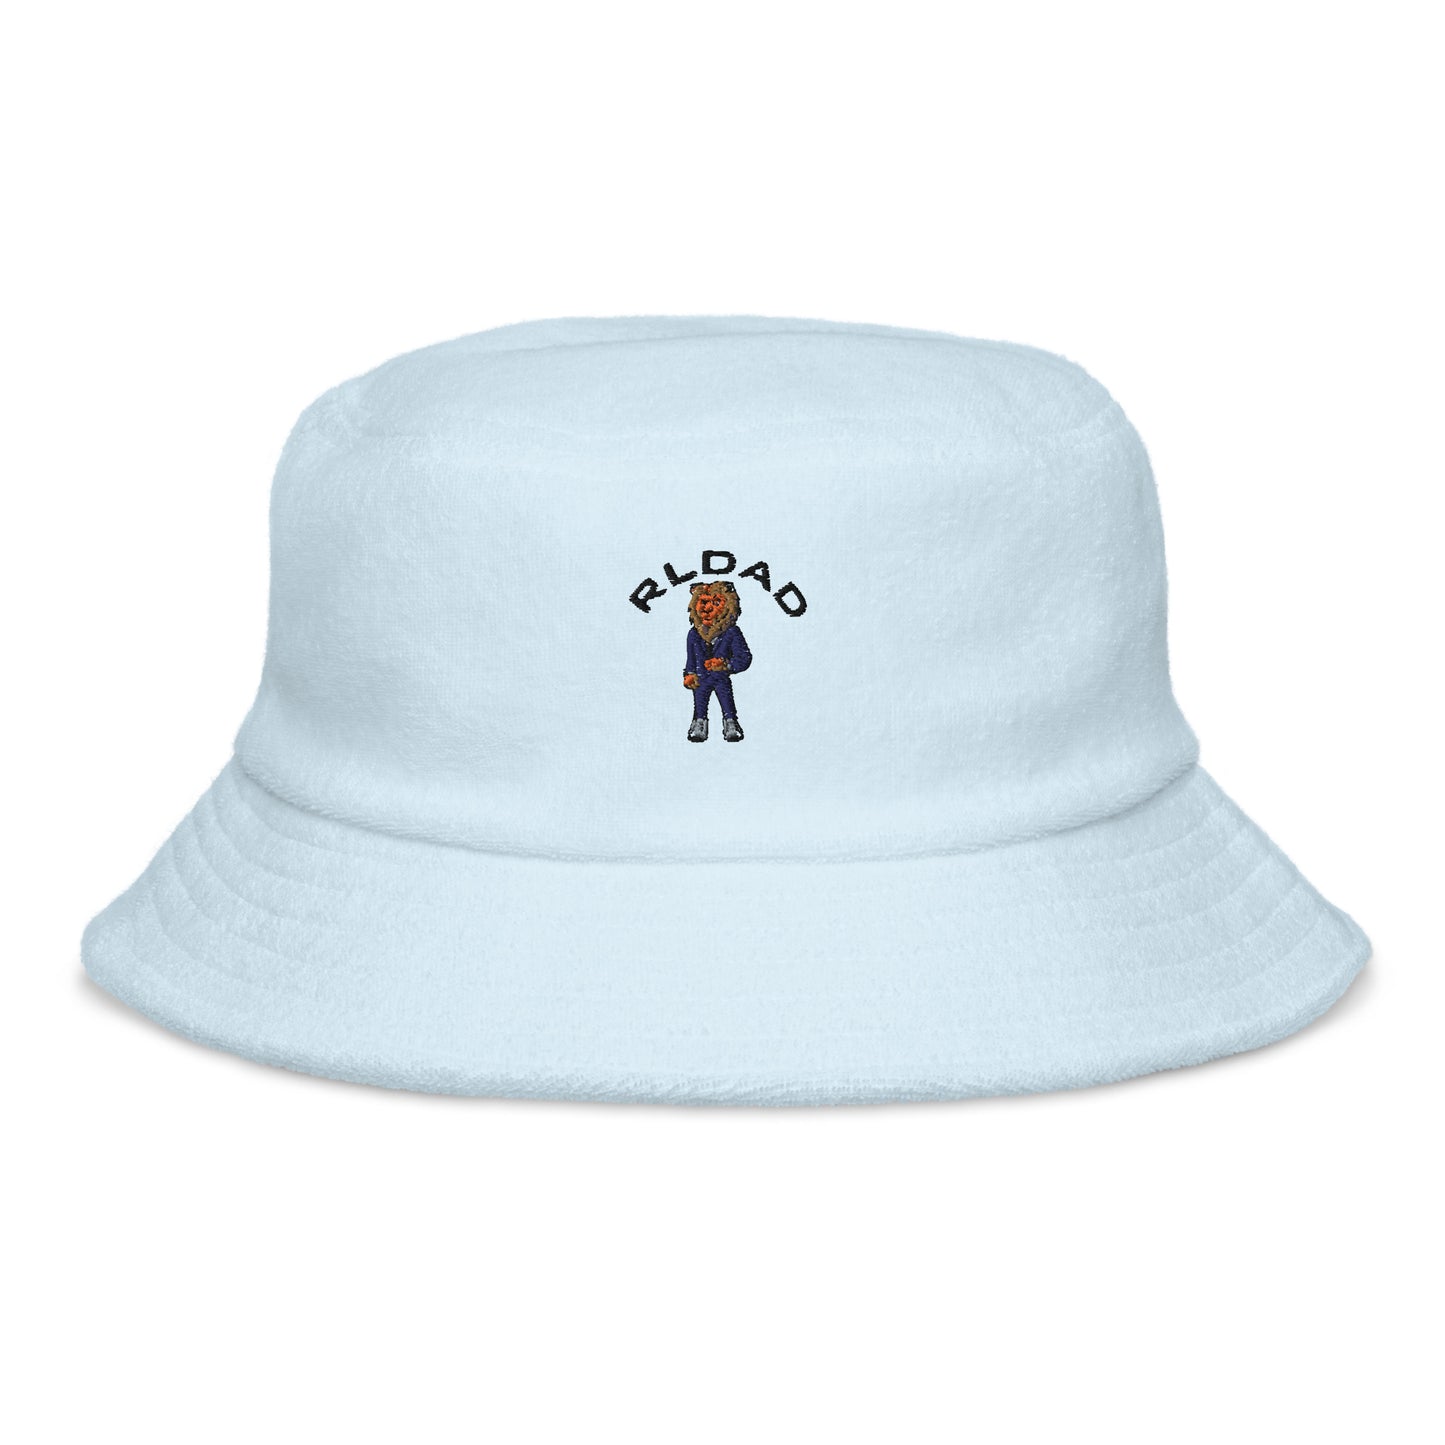 Big Boy RLD terry cloth bucket hat